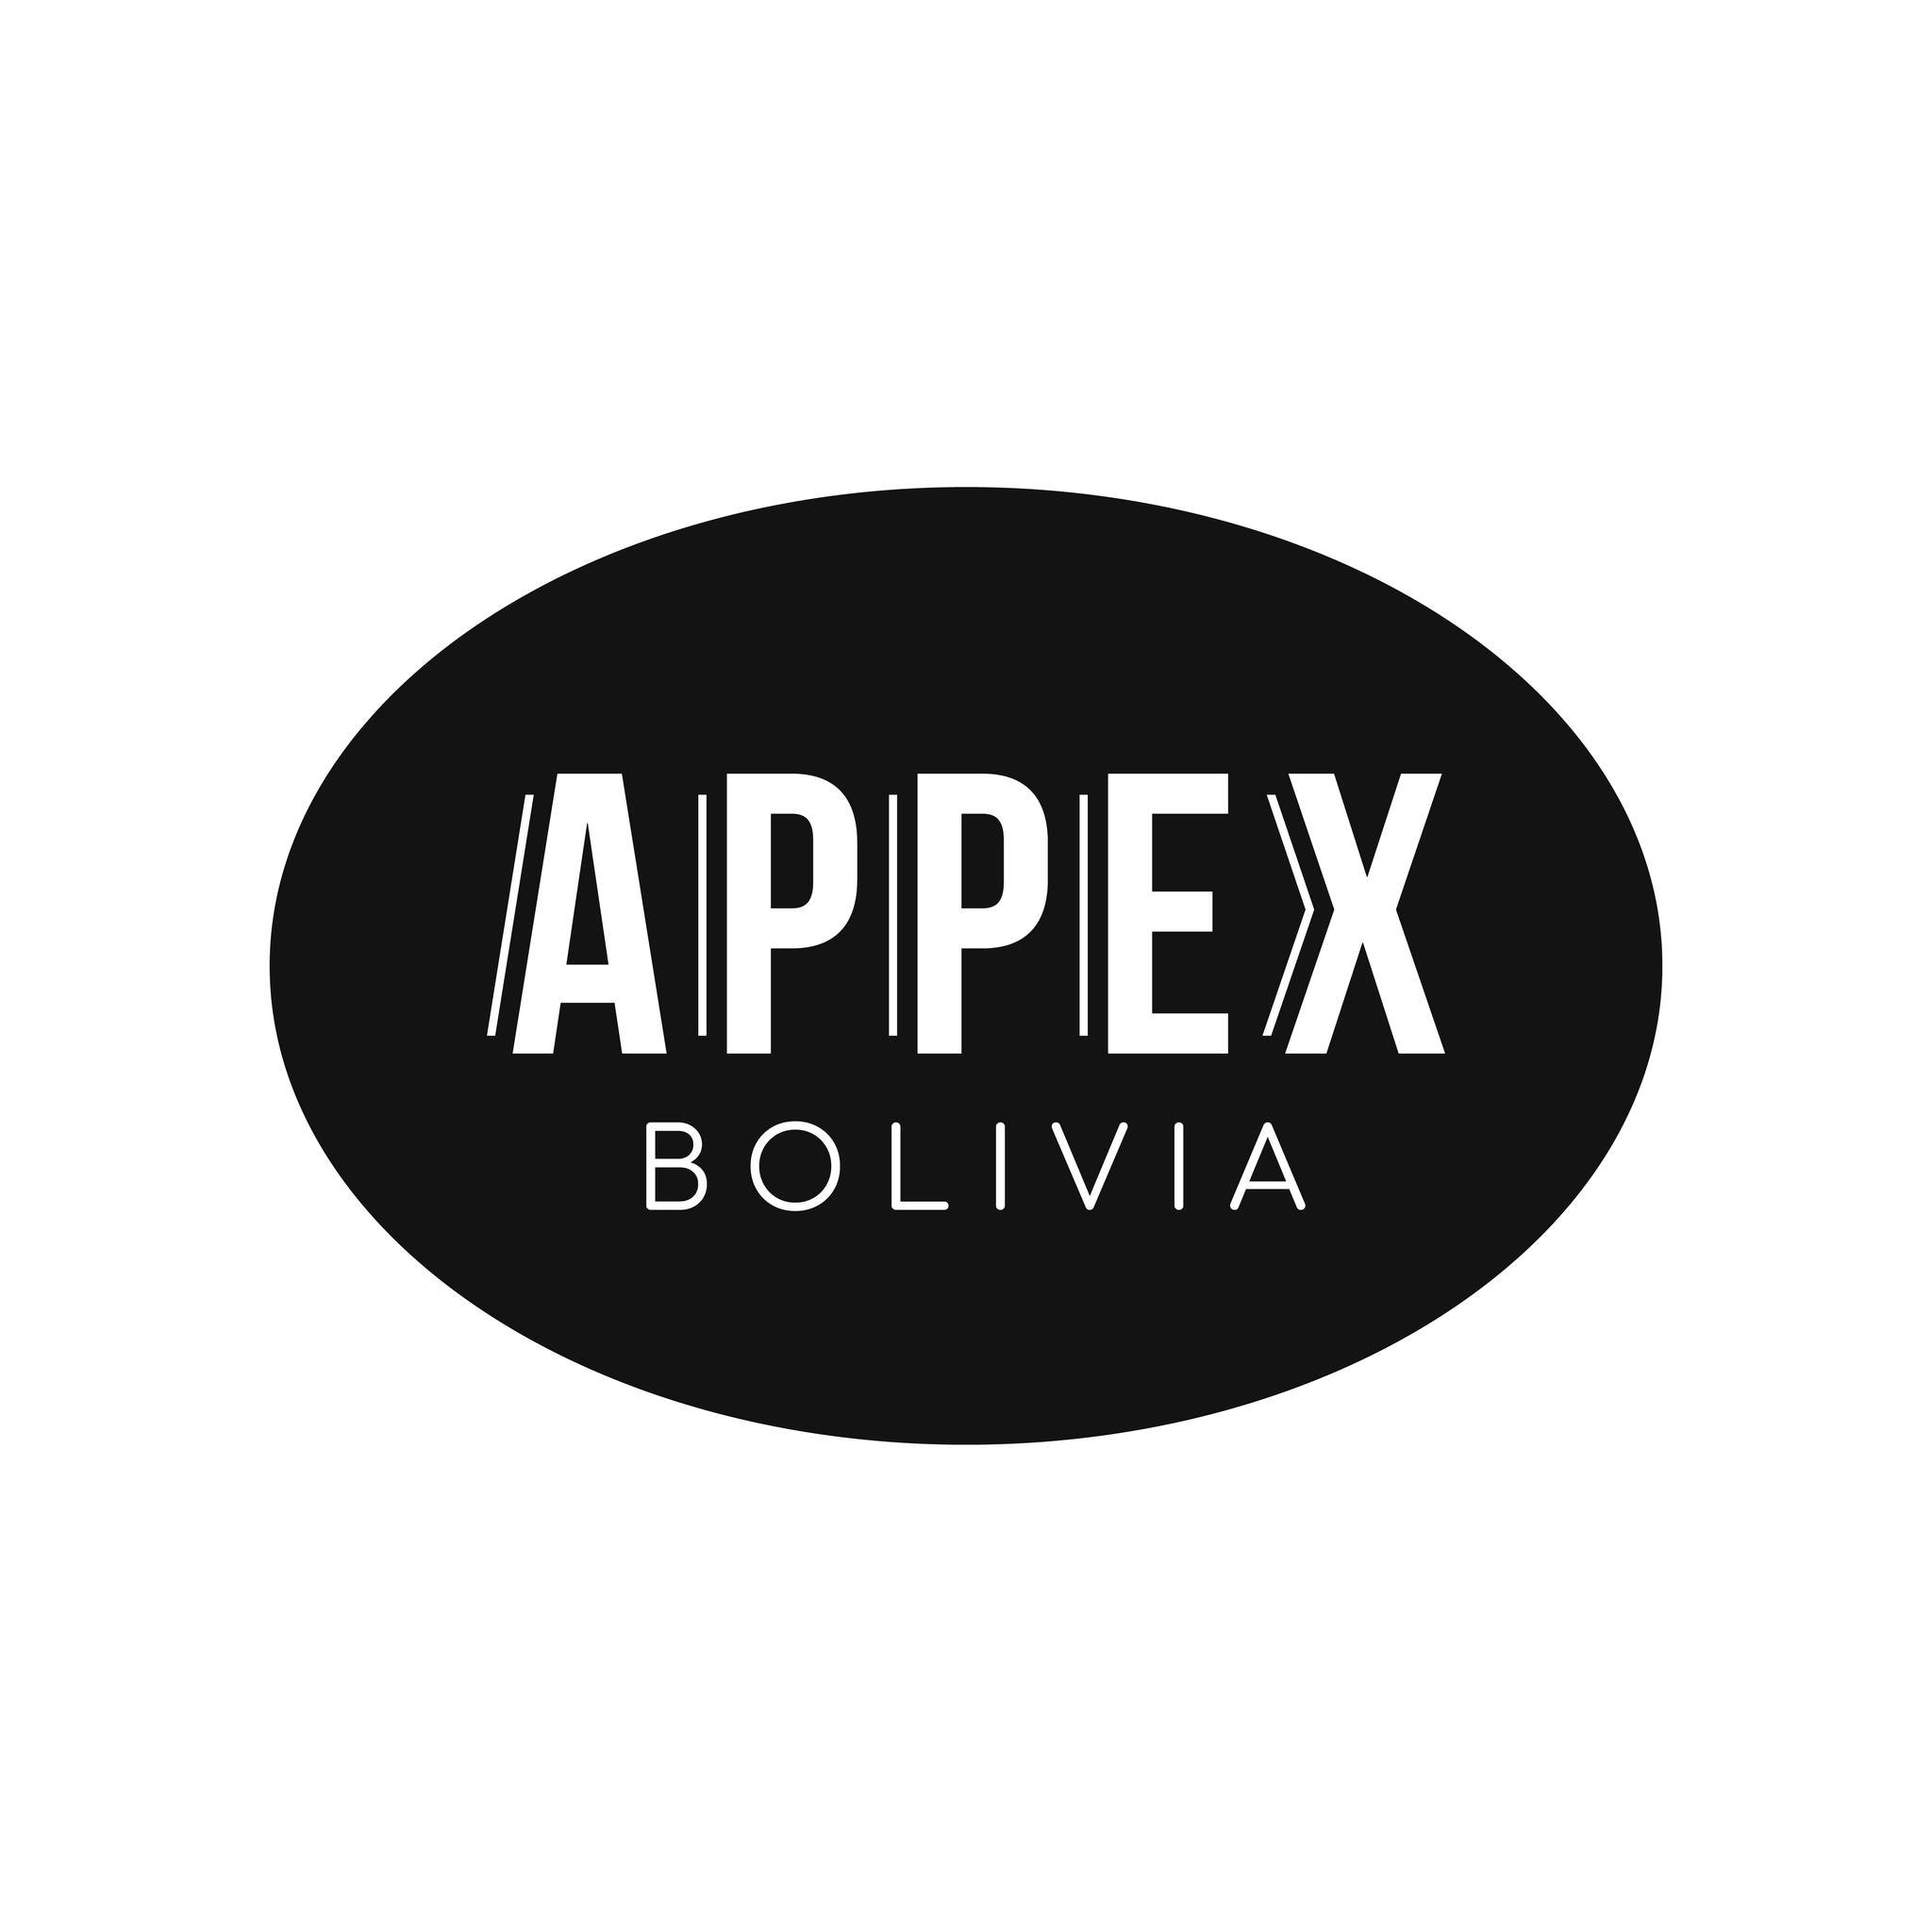 Appex Bolivia